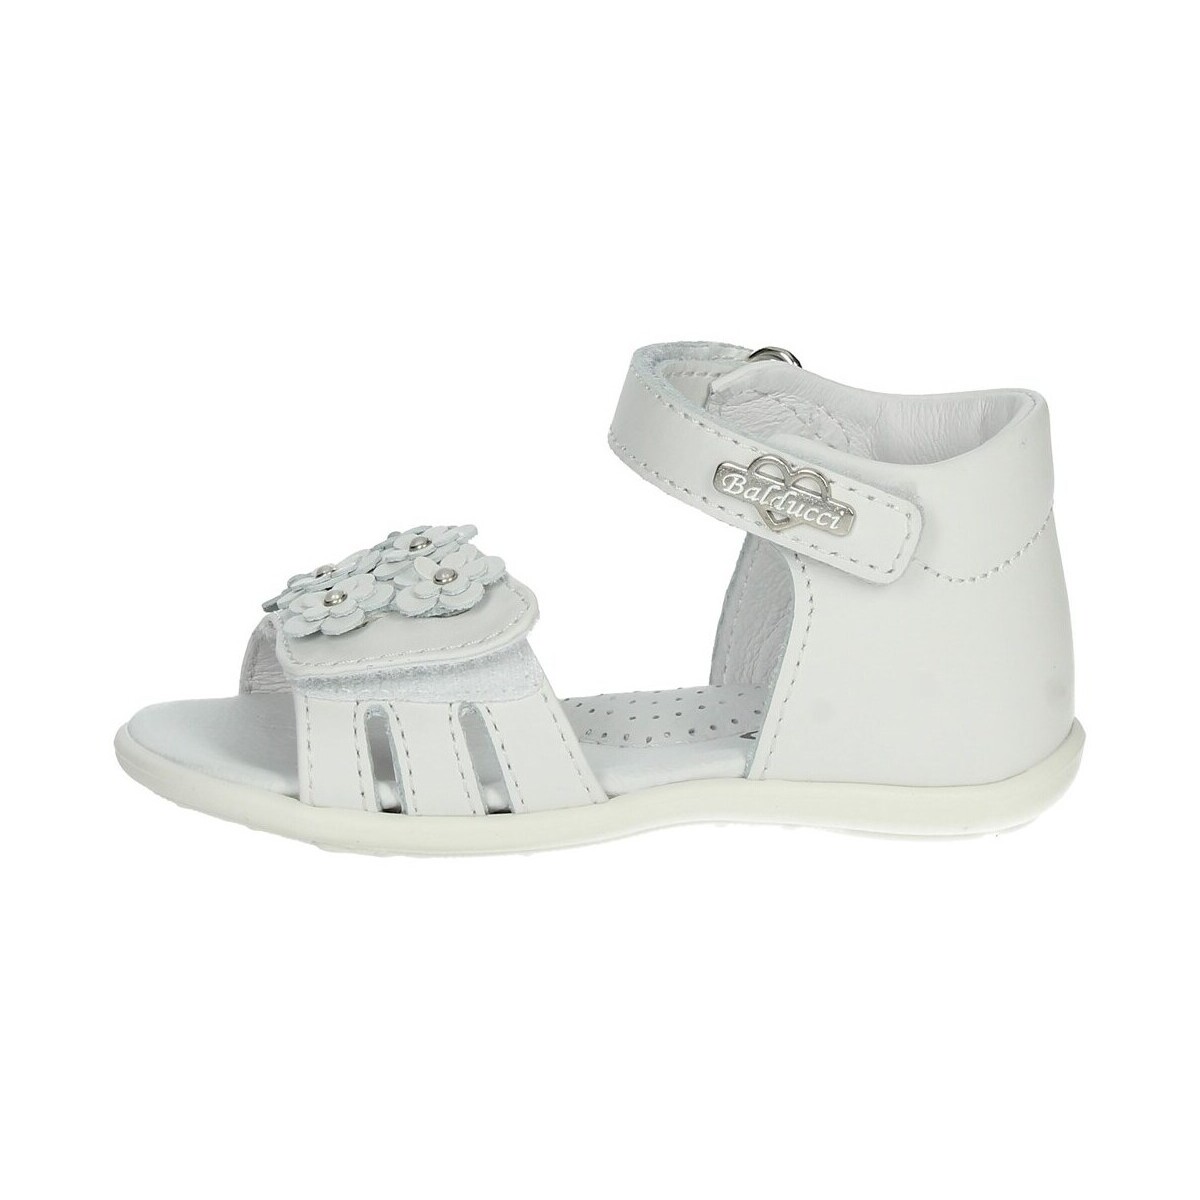 Chaussures Fille Sandales et Nu-pieds Balducci CITA5853 Blanc